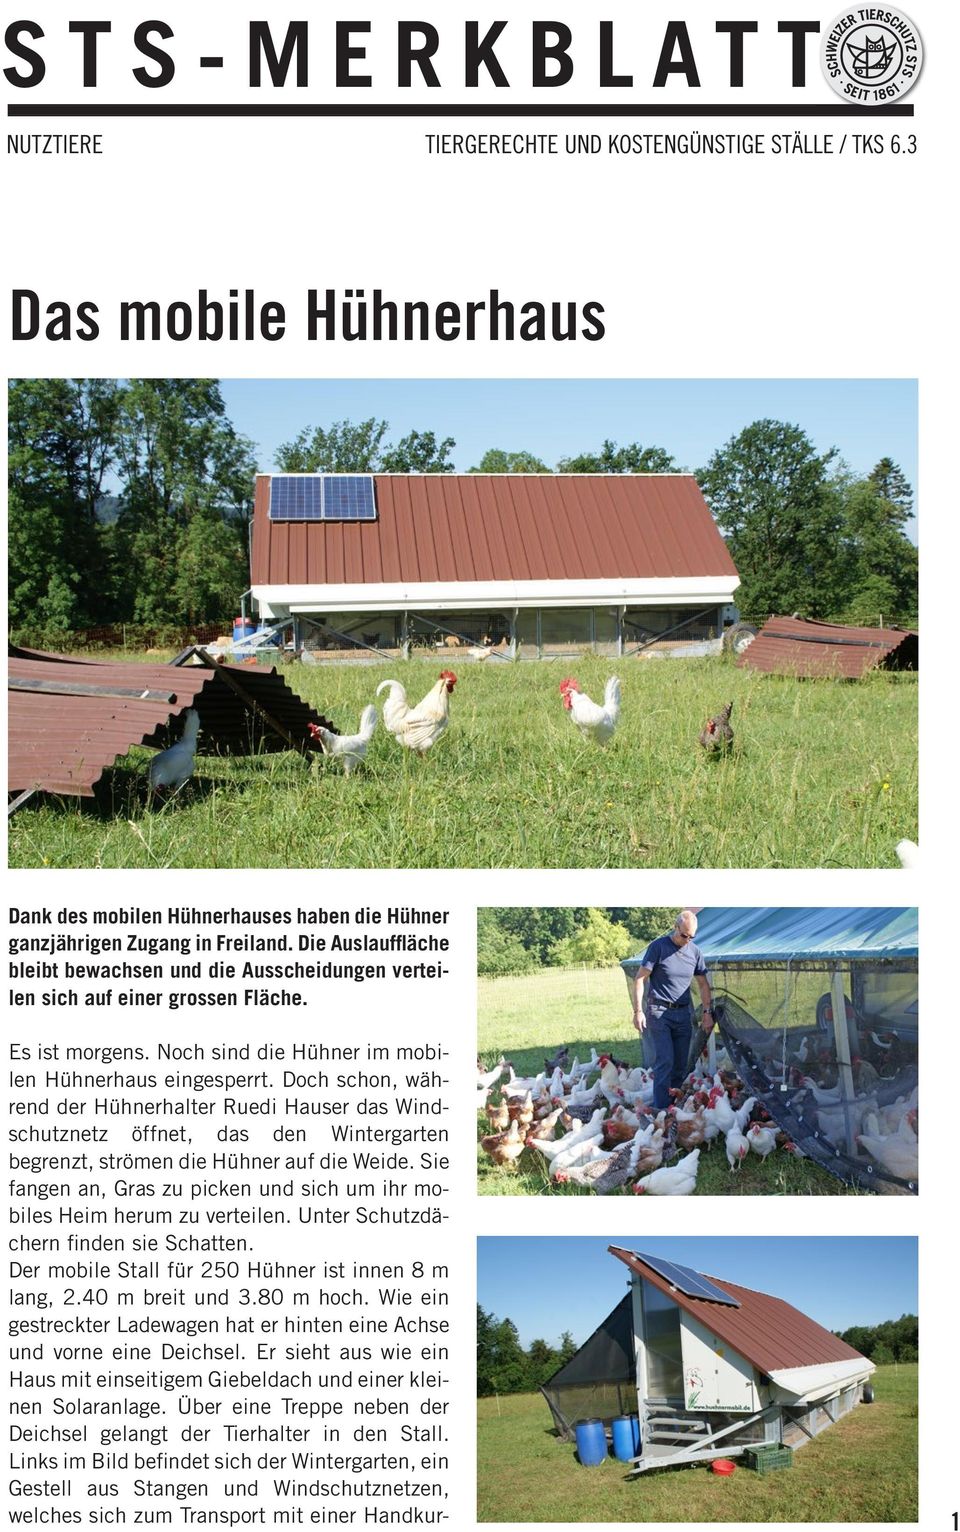 Doch schon, während der Hühnerhalter Ruedi Hauser das Windschutznetz öffnet, das den Wintergarten begrenzt, strömen die Hühner auf die Weide.